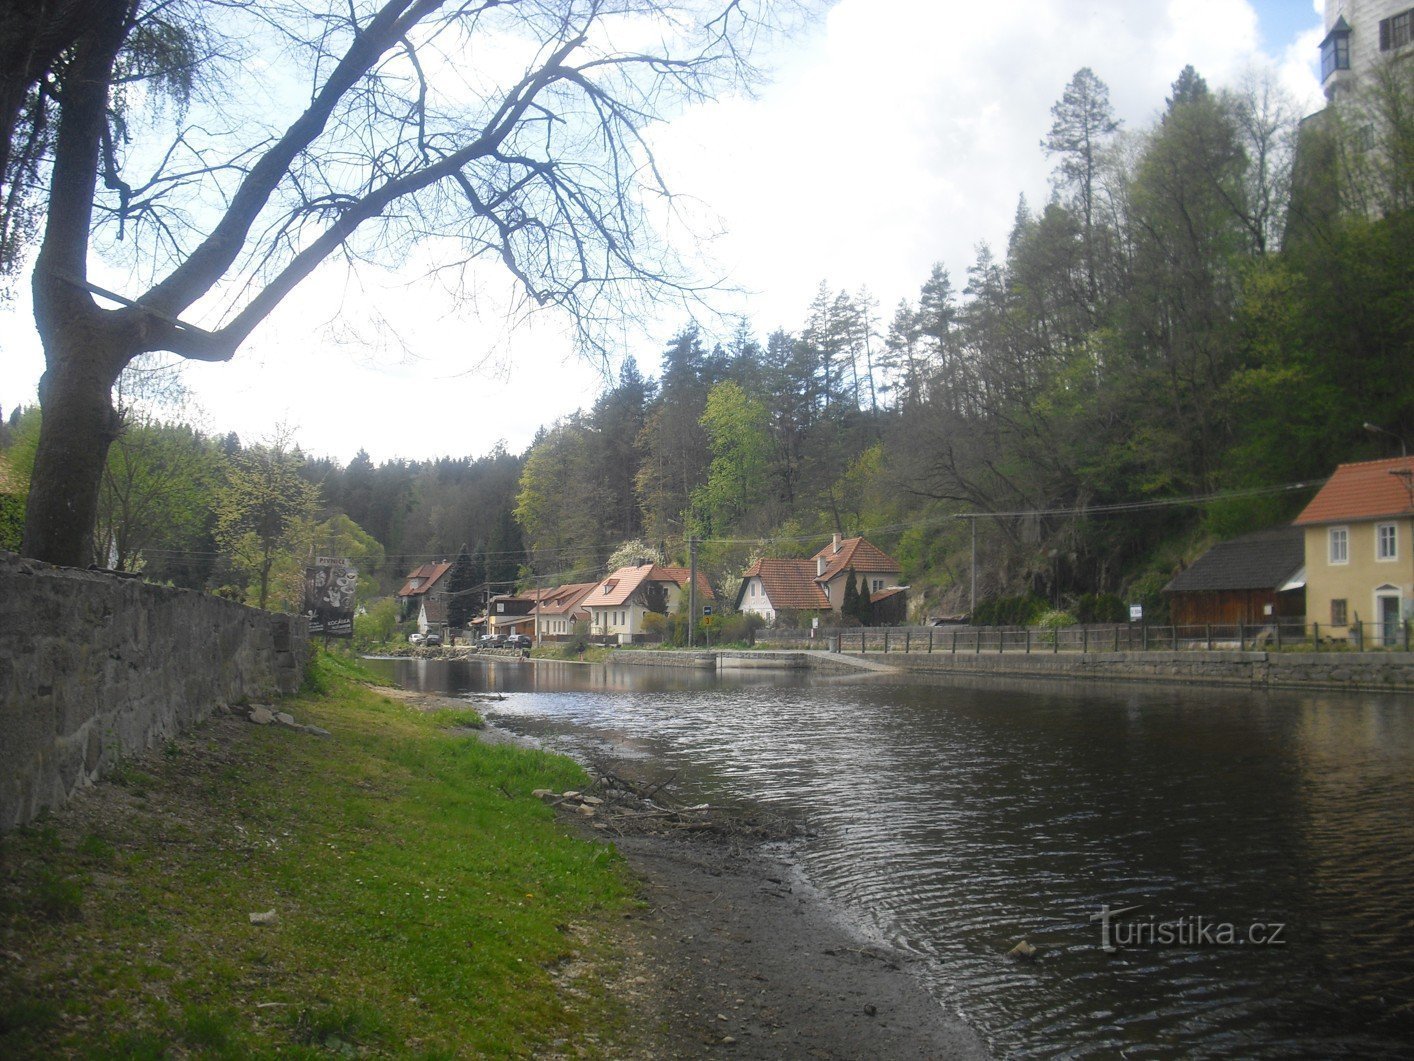 Rožmberk și unul dintre cele mai vechi castele ale familiei Vítkov